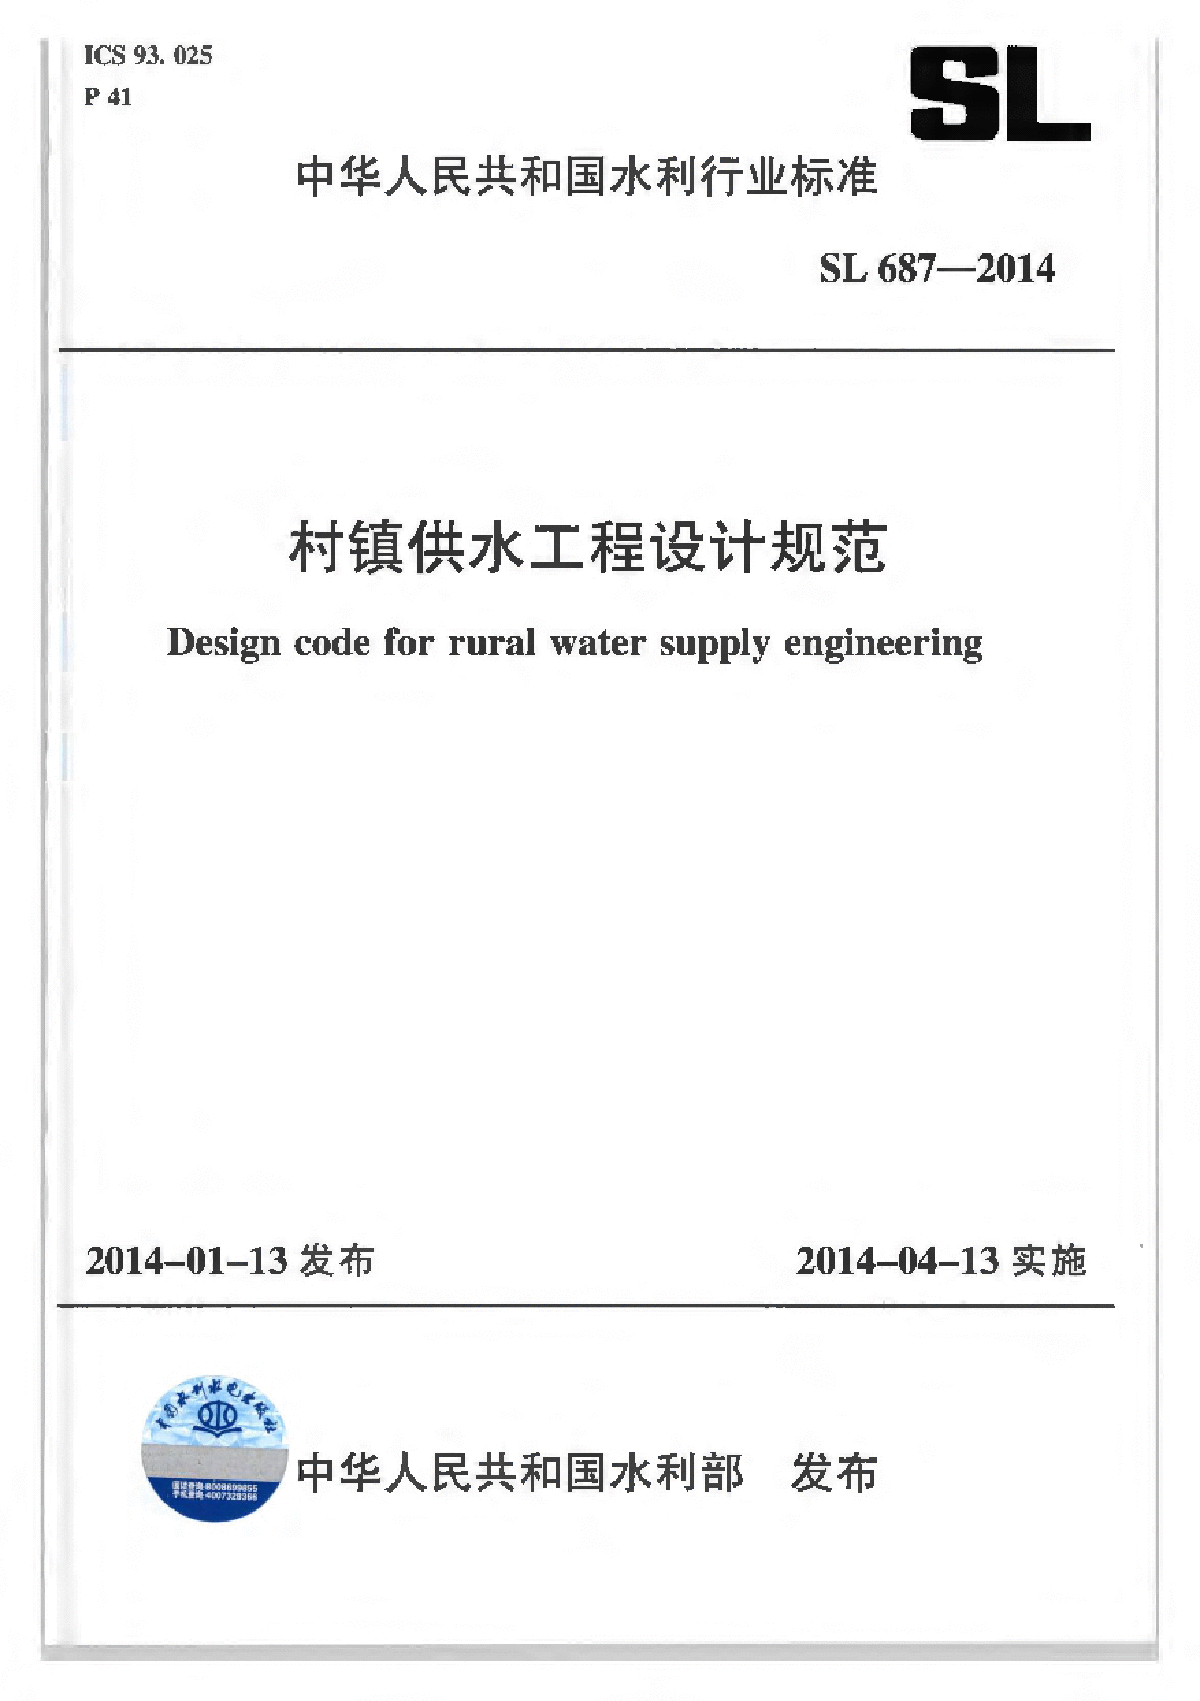 村镇供水工程设计规范 SL687-2014（合并条文说明版）